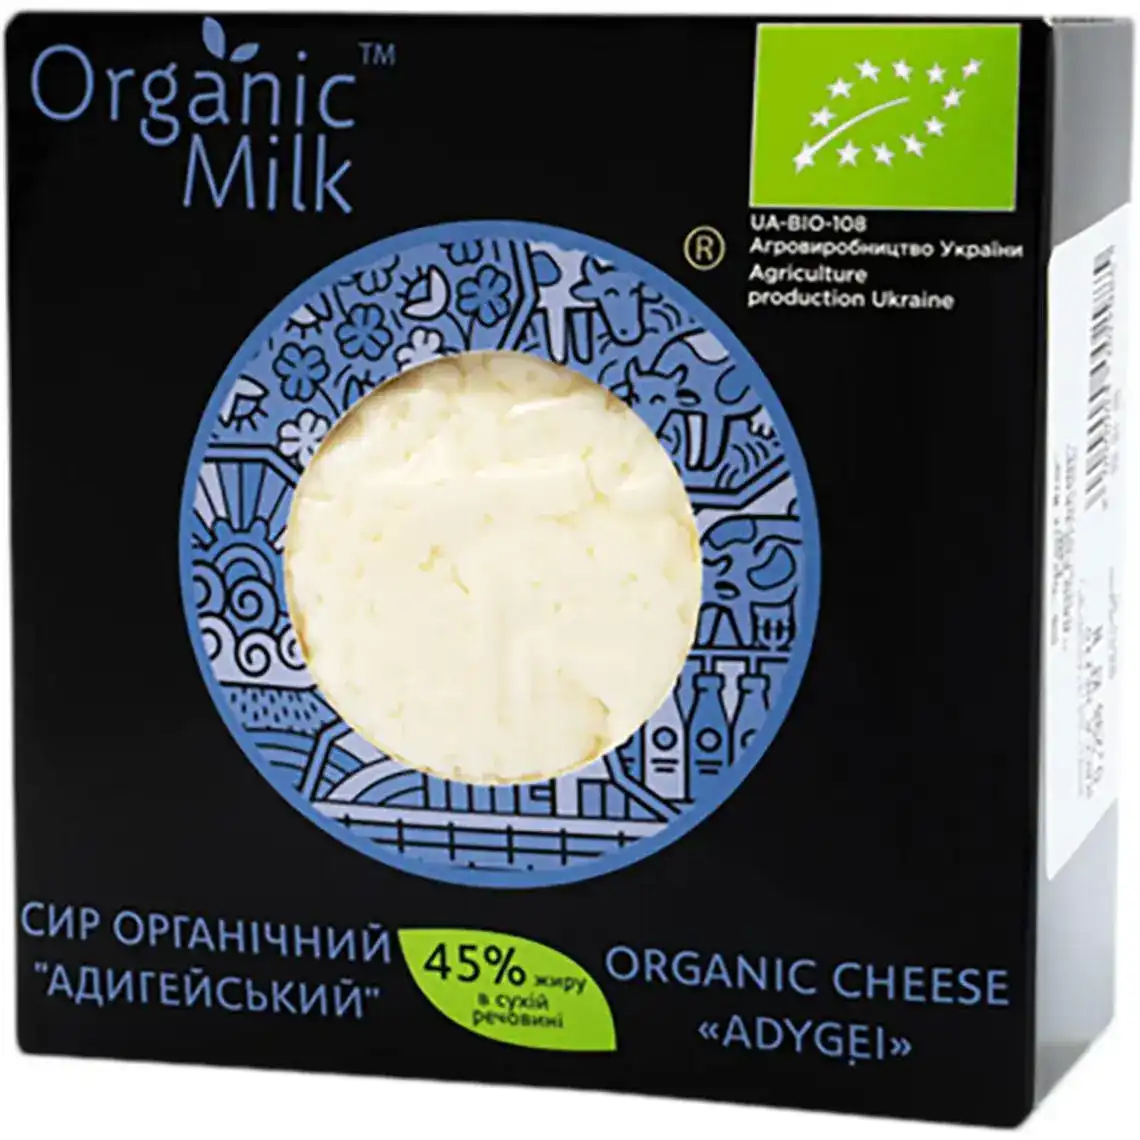 Сир Organic Milk Адигейський м'який 45% ваговий